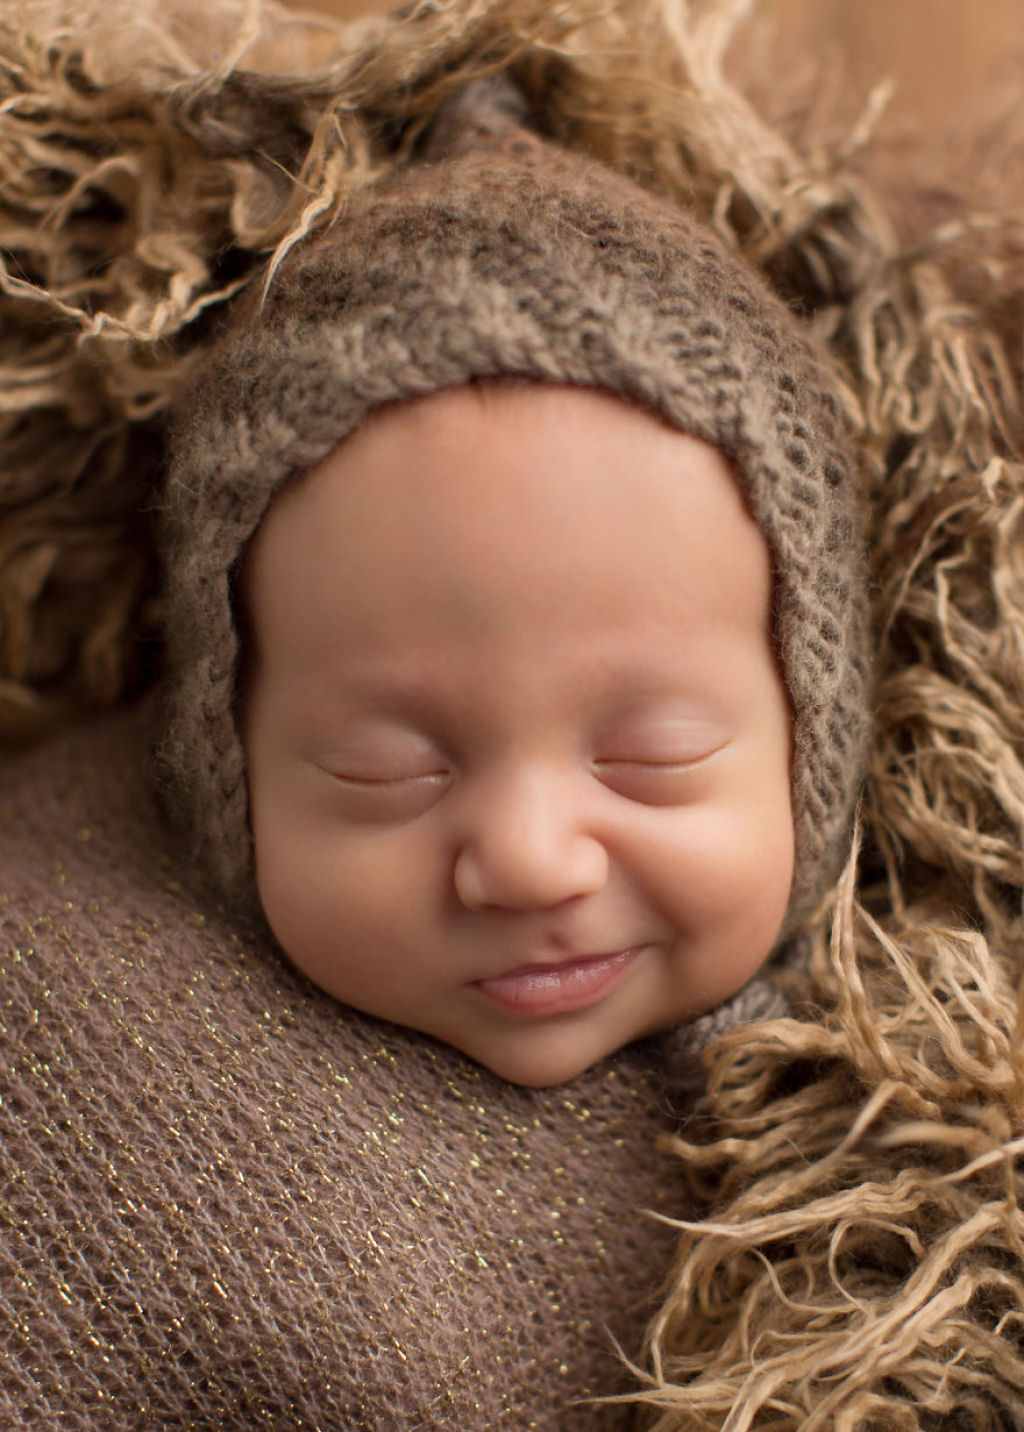 Fotgrafa britnica cria retratos insuportavelmente ternos de bebs dormindo 10